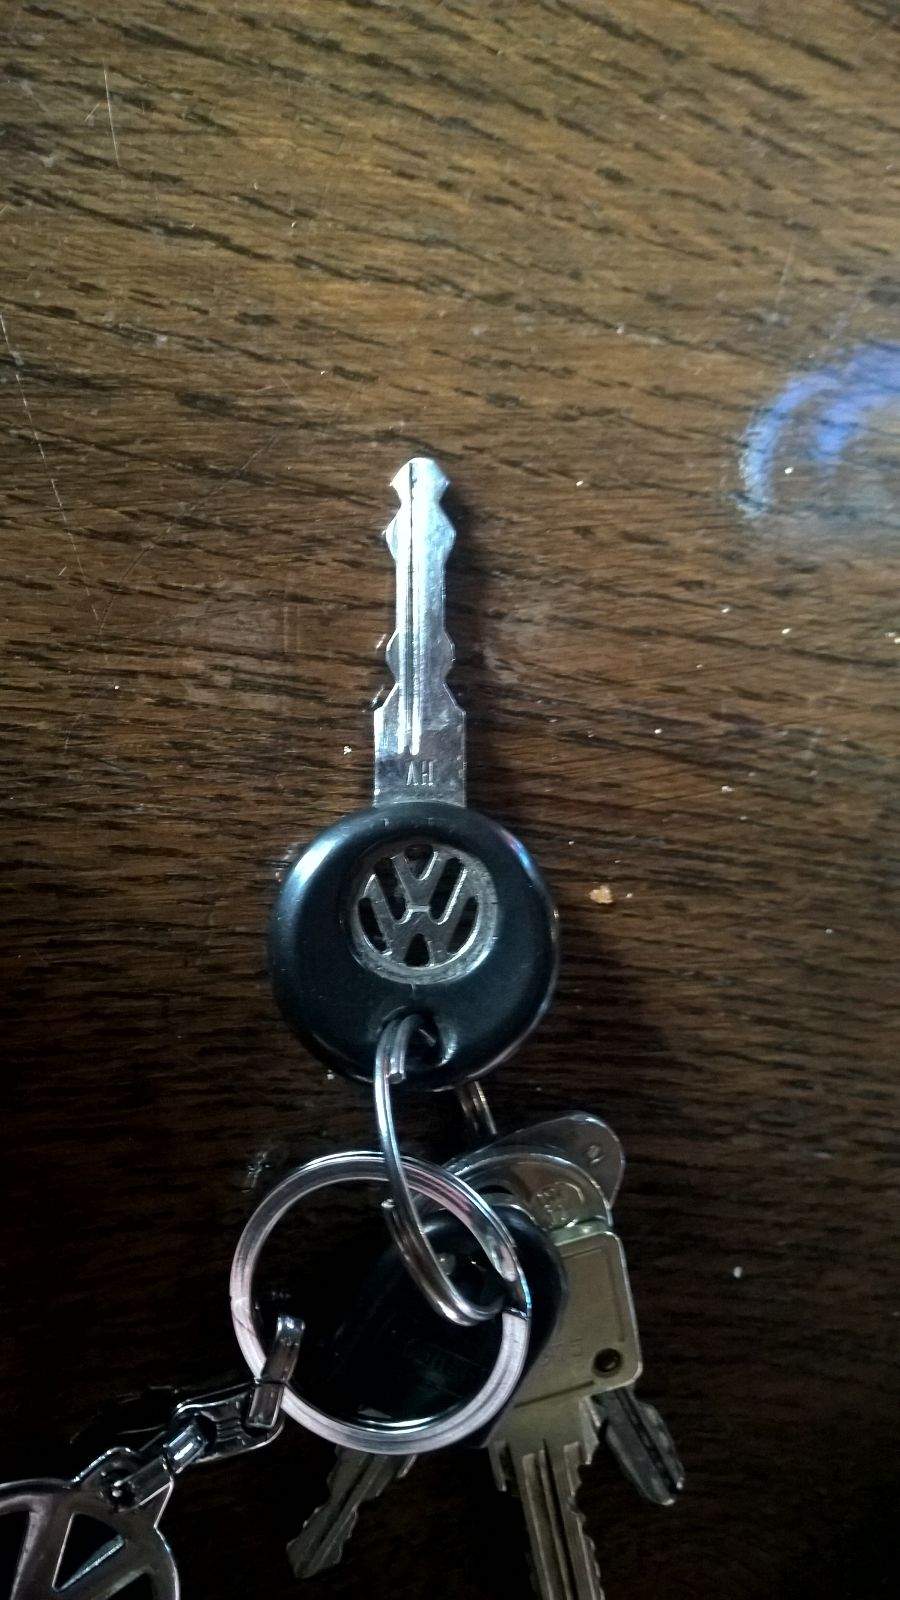 Wie viele verschiedene Schlüssel gibt es von den VW Schlüsseln (Bild)?  (Auto, alt)